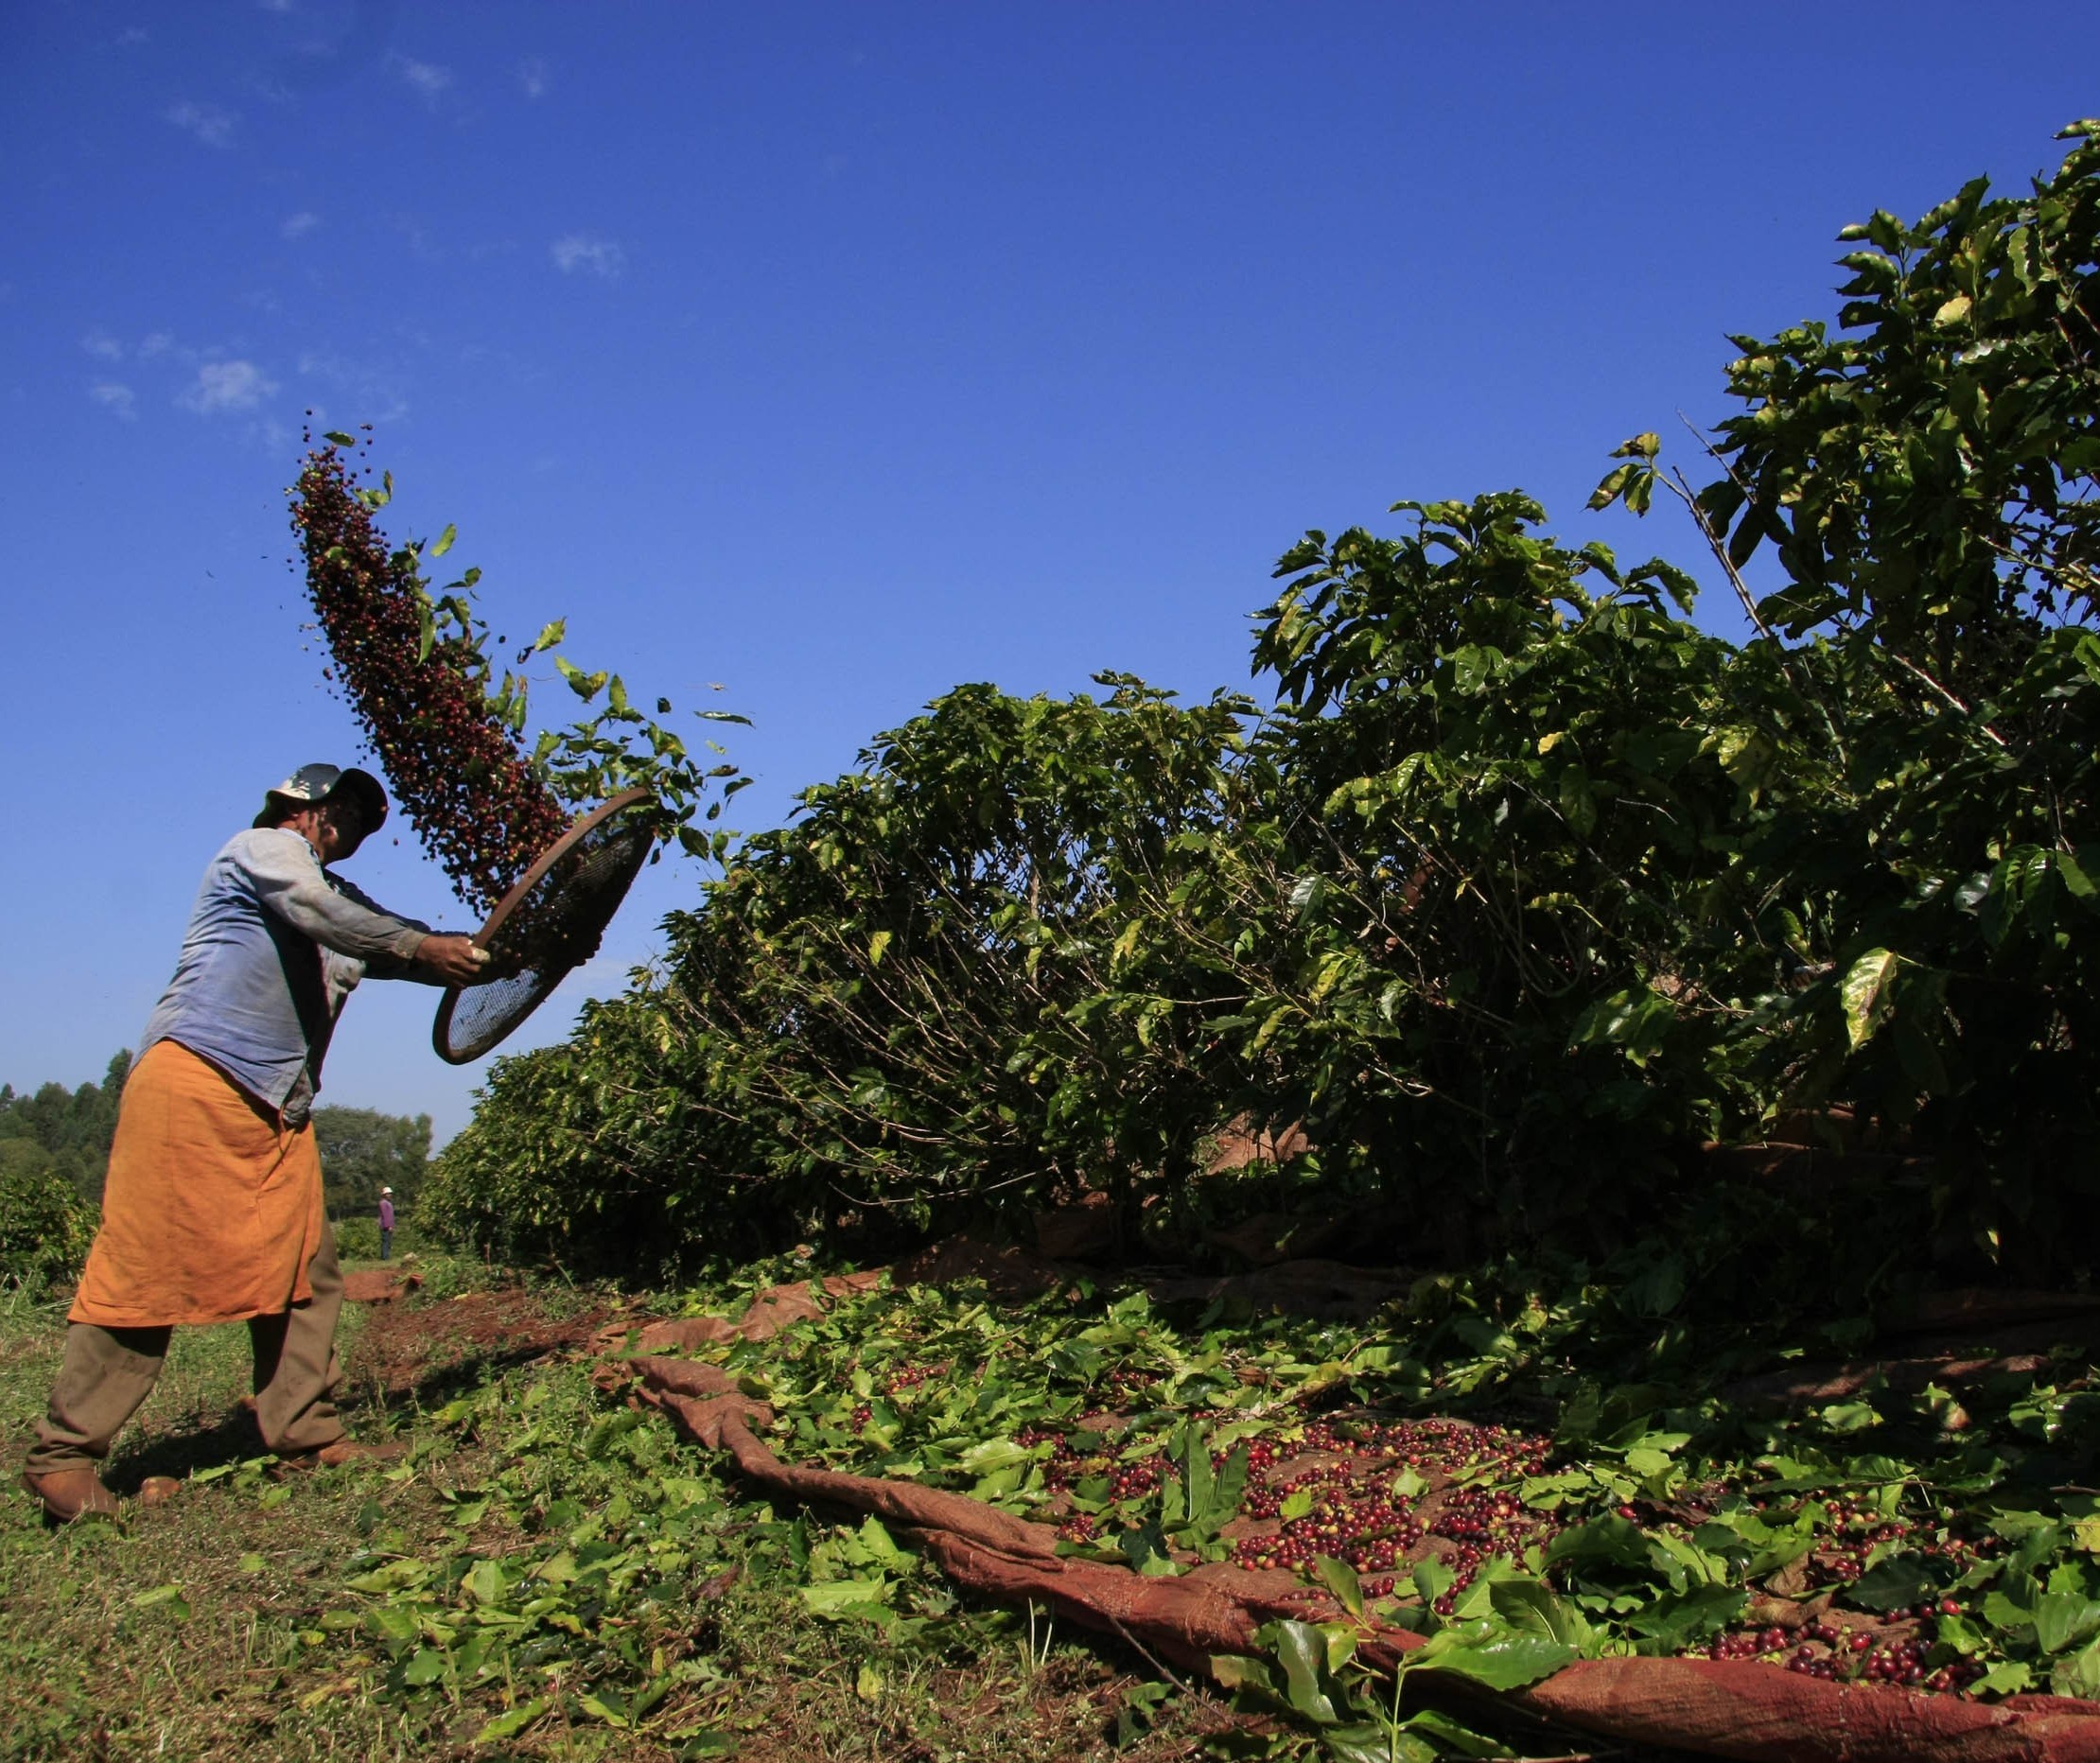 96% da área plantada com café no Paraná foi colhida